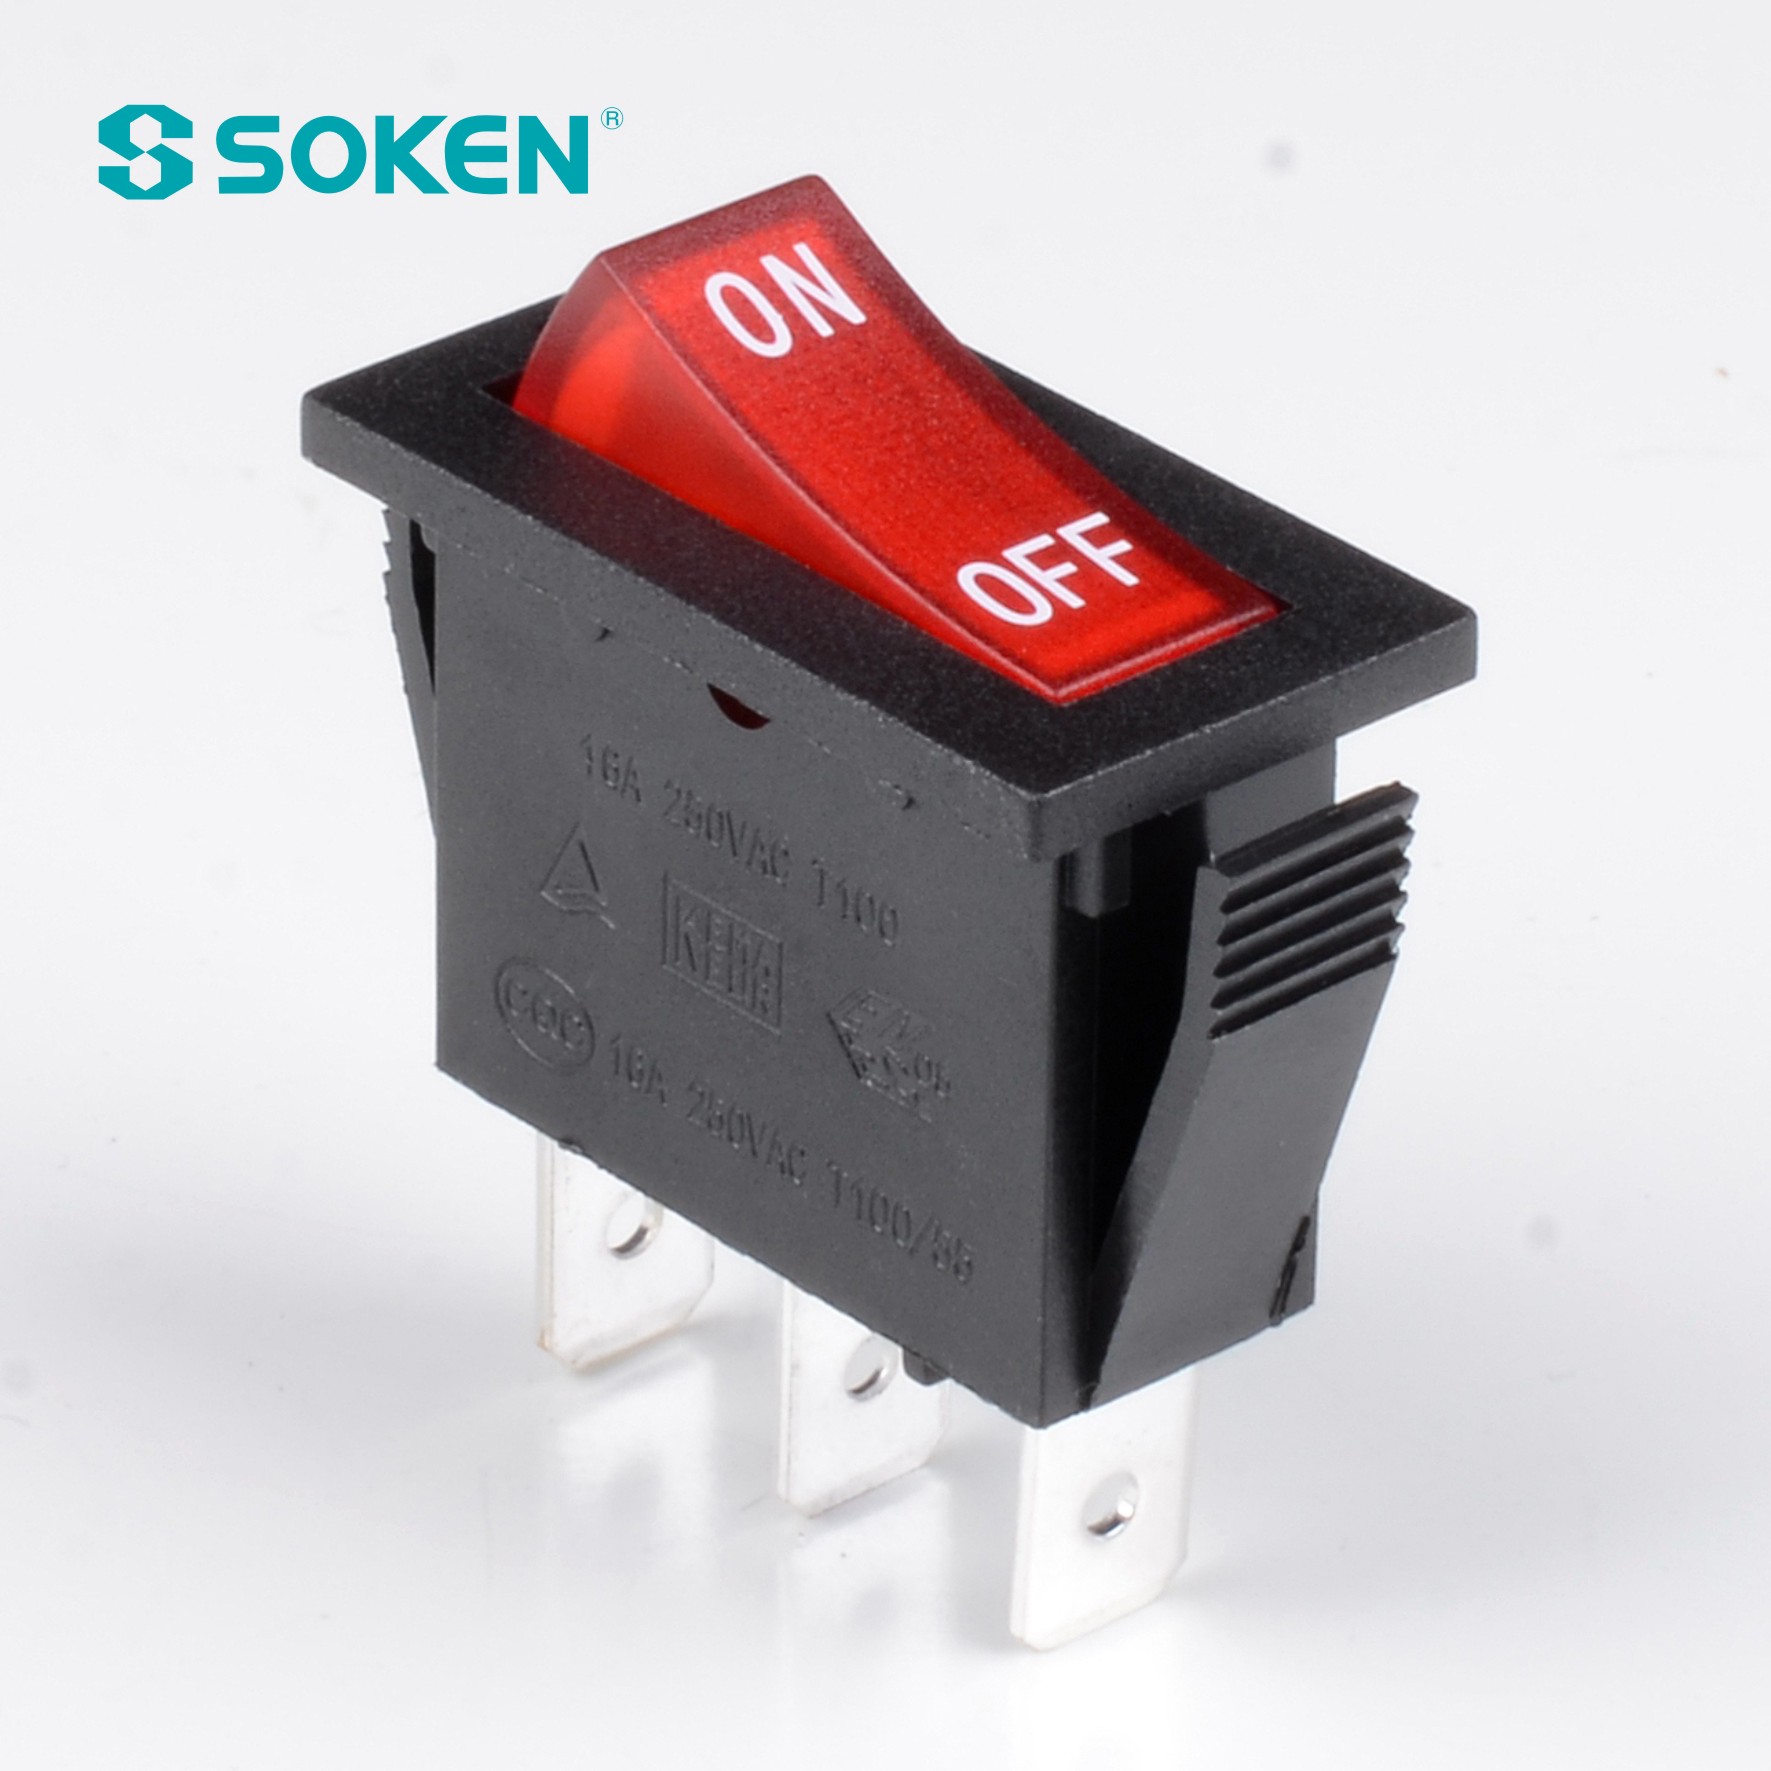 Soken Rk1-16 1X1n B/R air far Rocker Switch